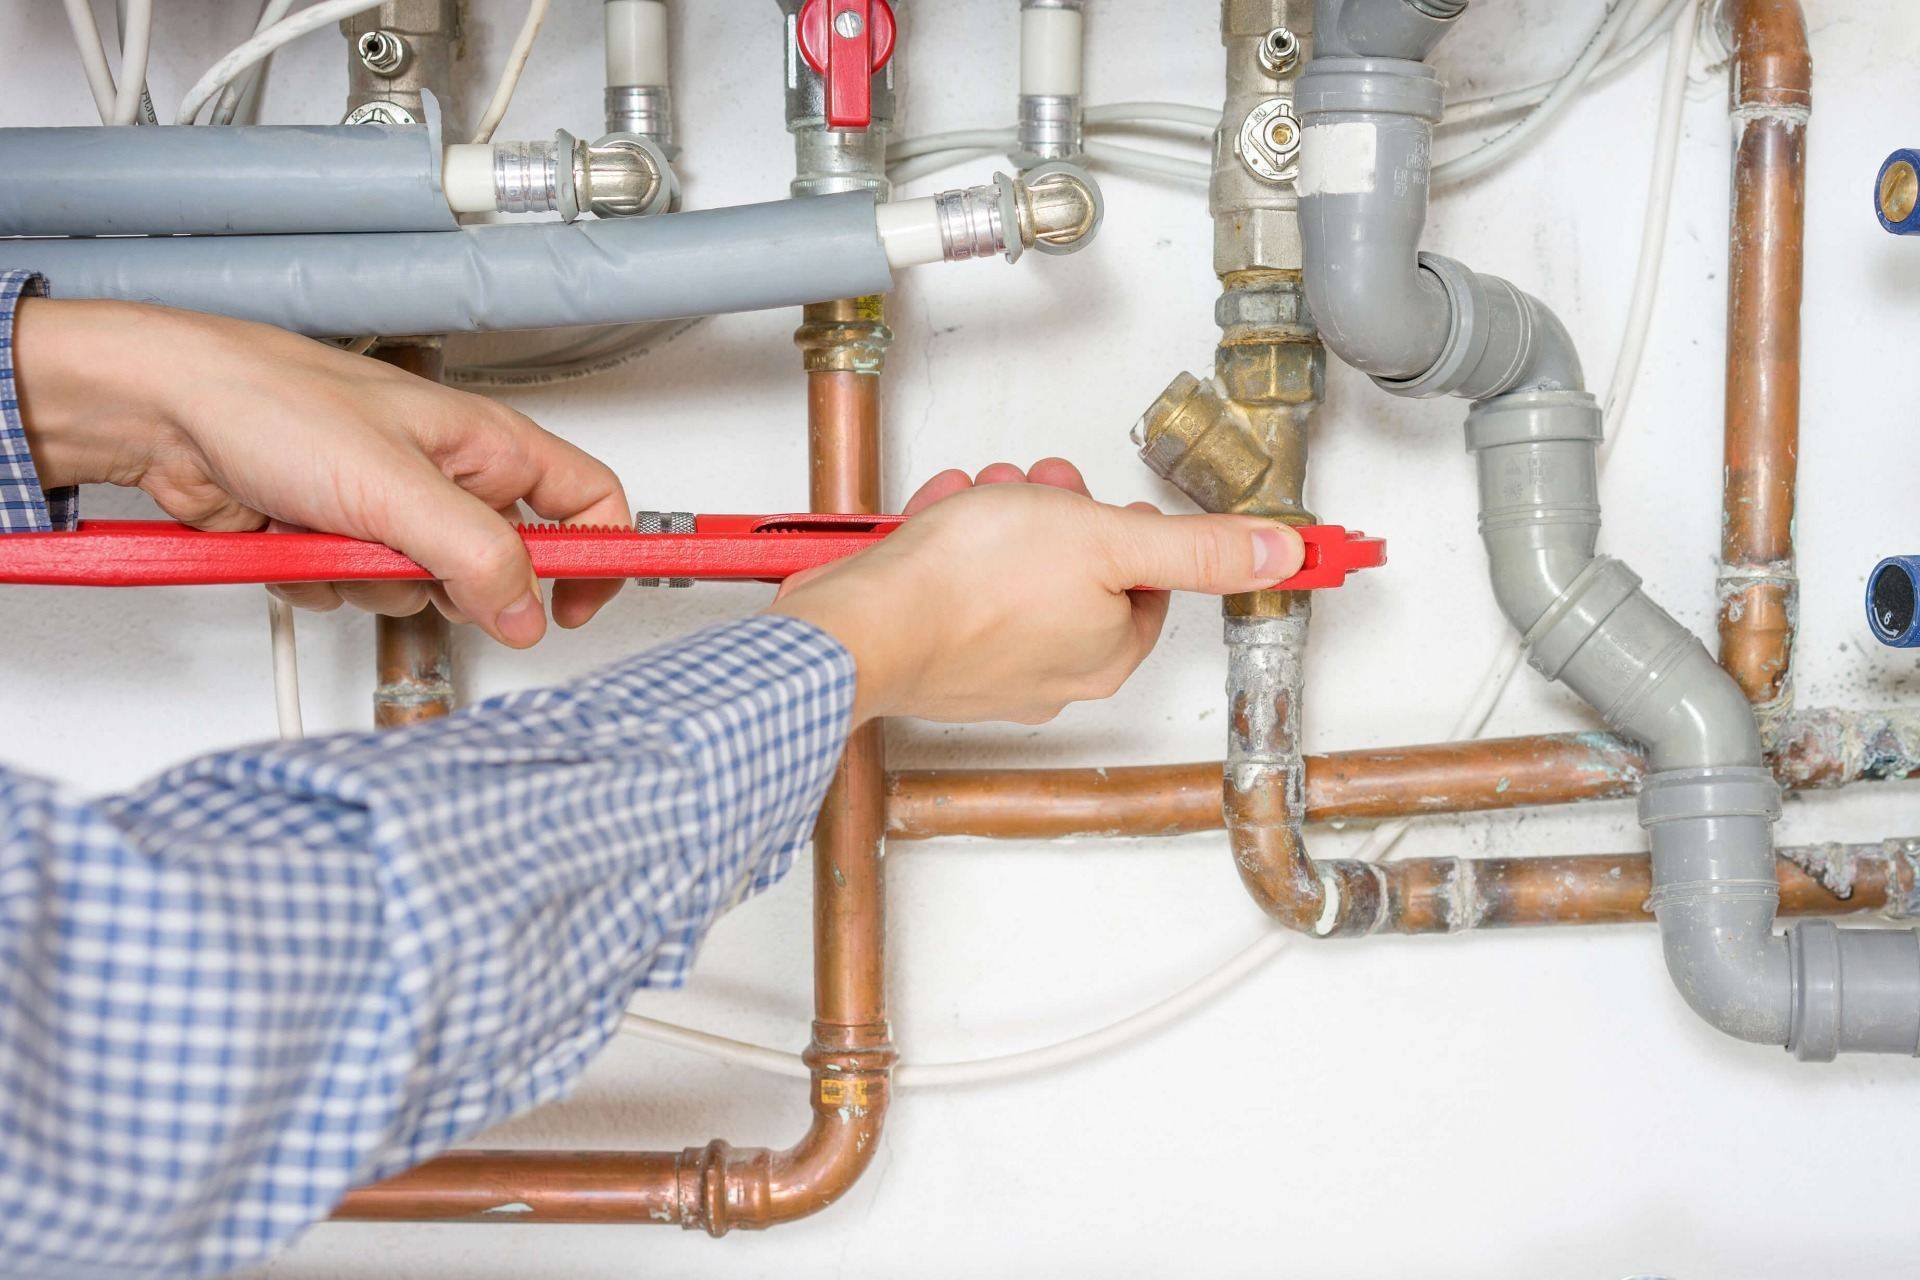 Гидроудар в системе водоснабжения: причины, защита квартиры и компенсаторы внутренние